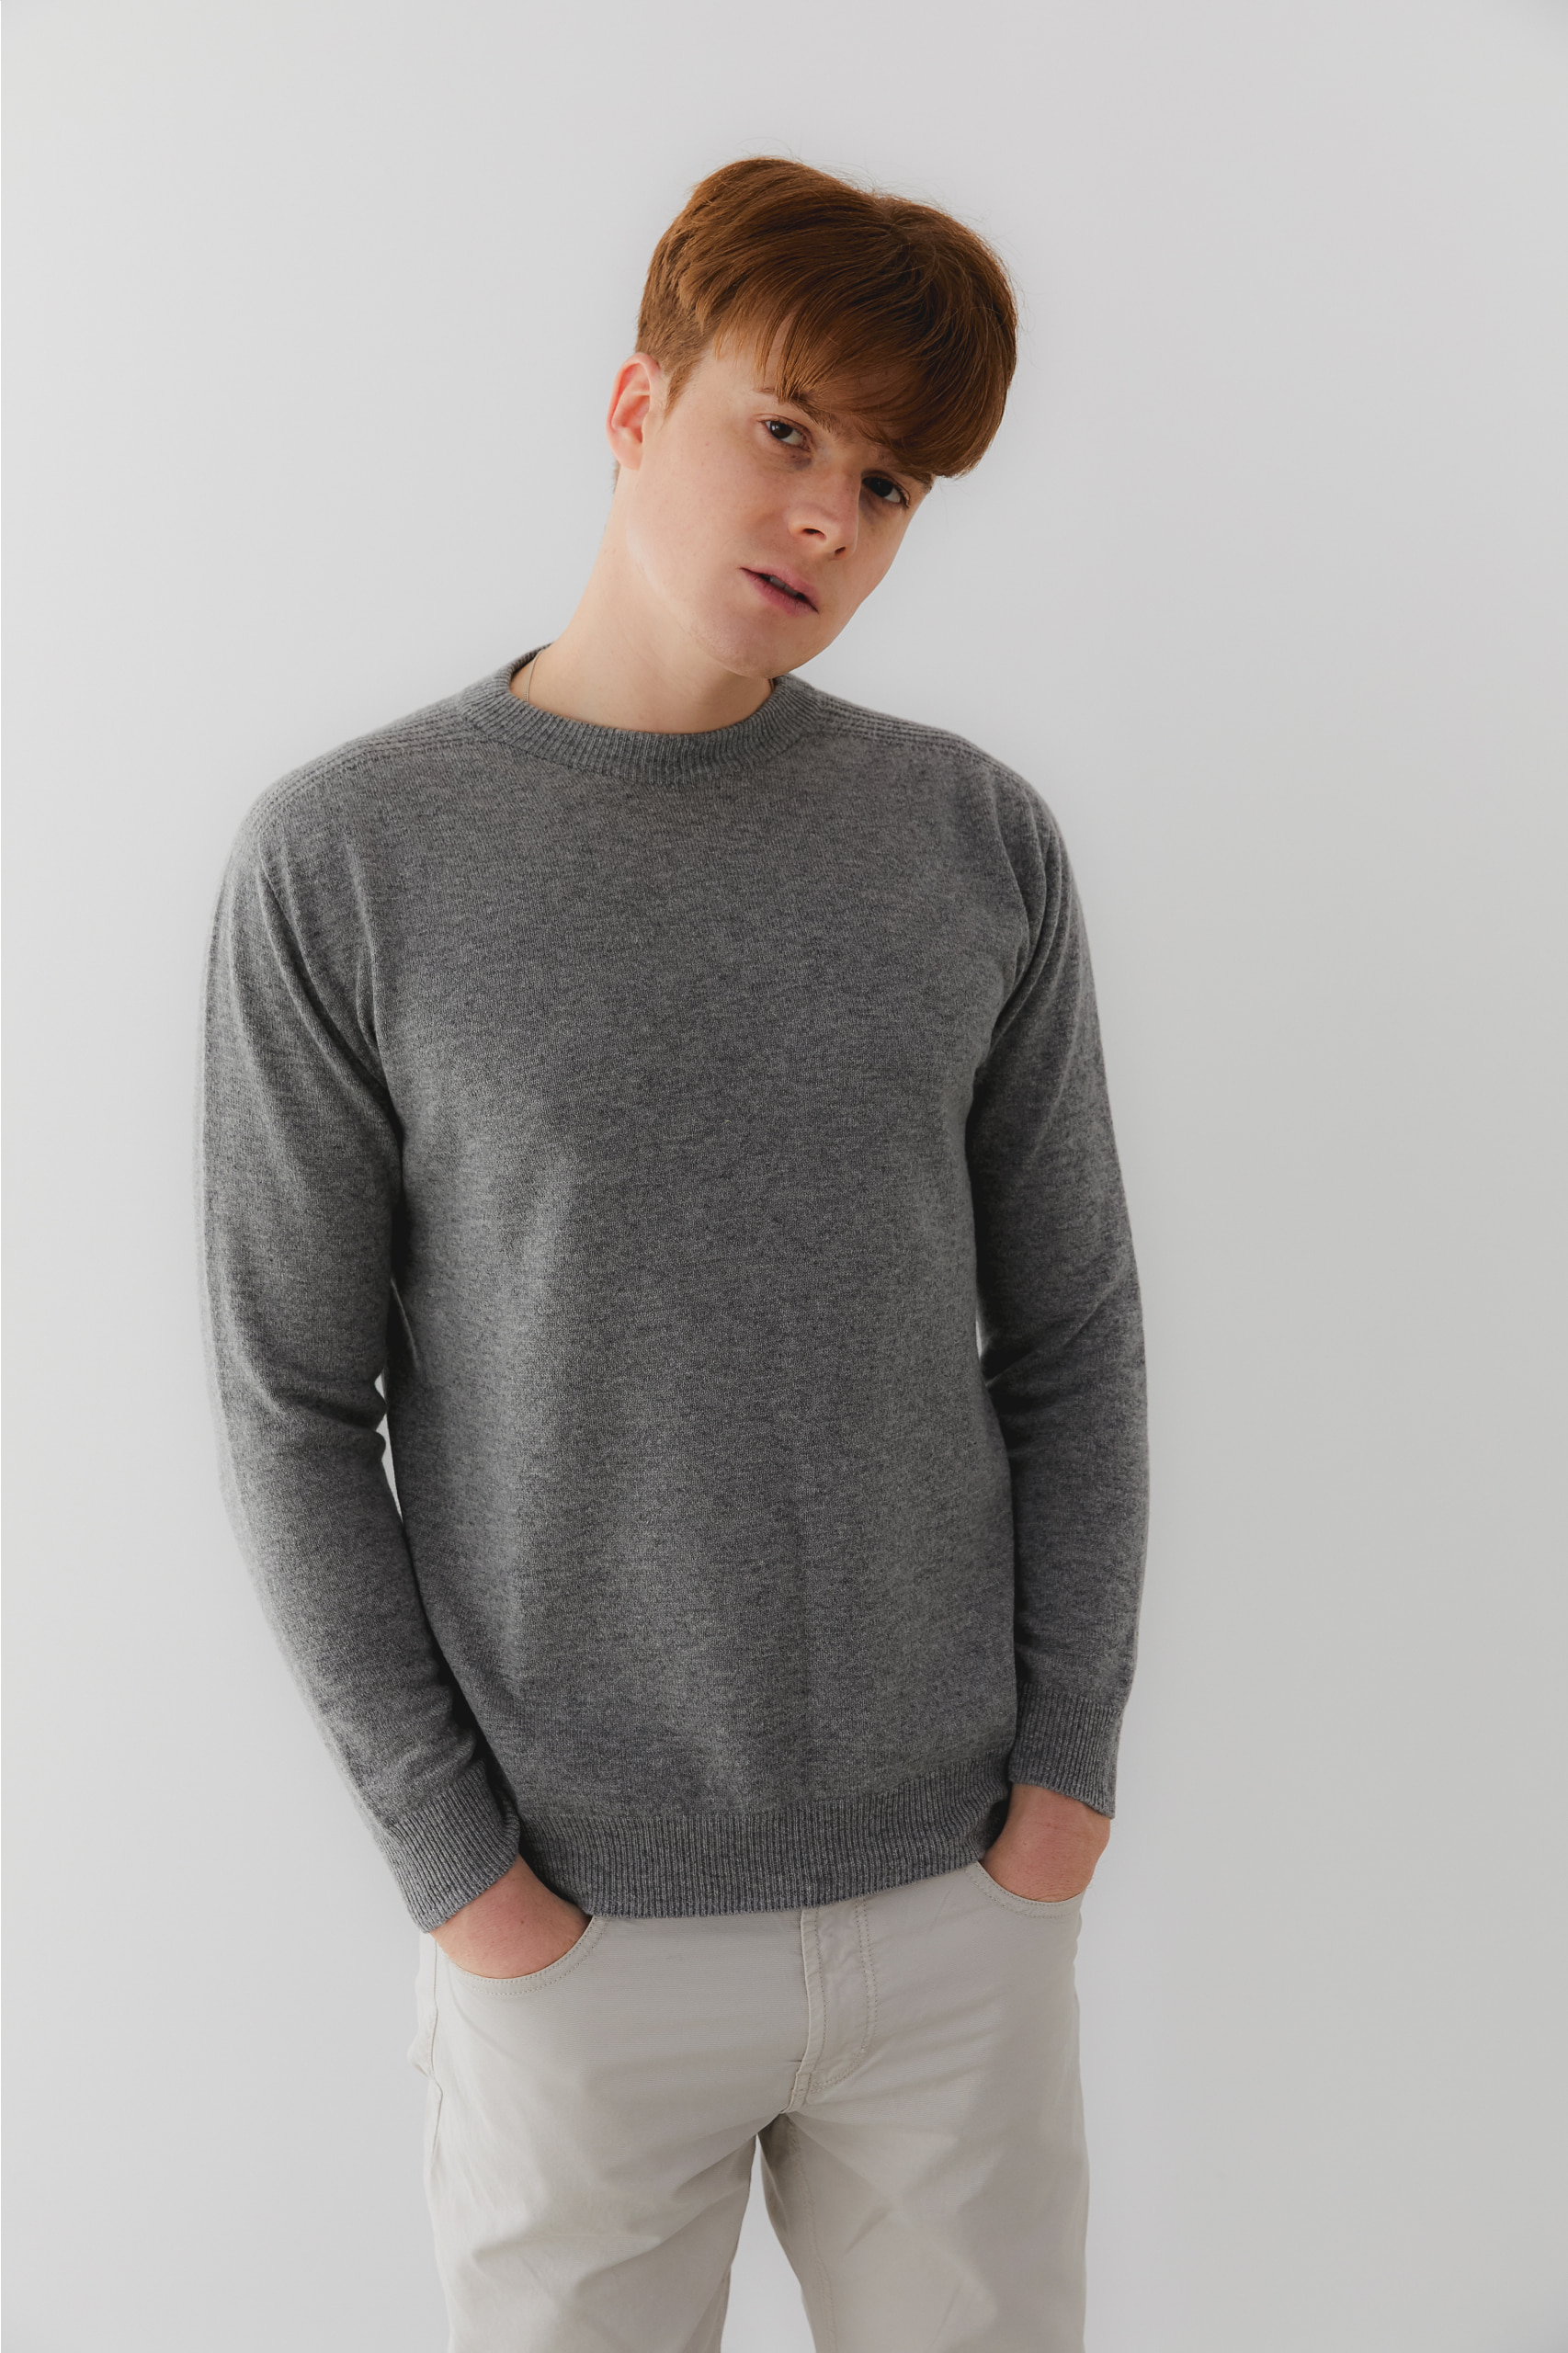 프리미엄 캐시미어 100 남성 라운드넥 스웨터 [Pure cashmere100 whole-garment knitting roundneck pullover - Warm gray